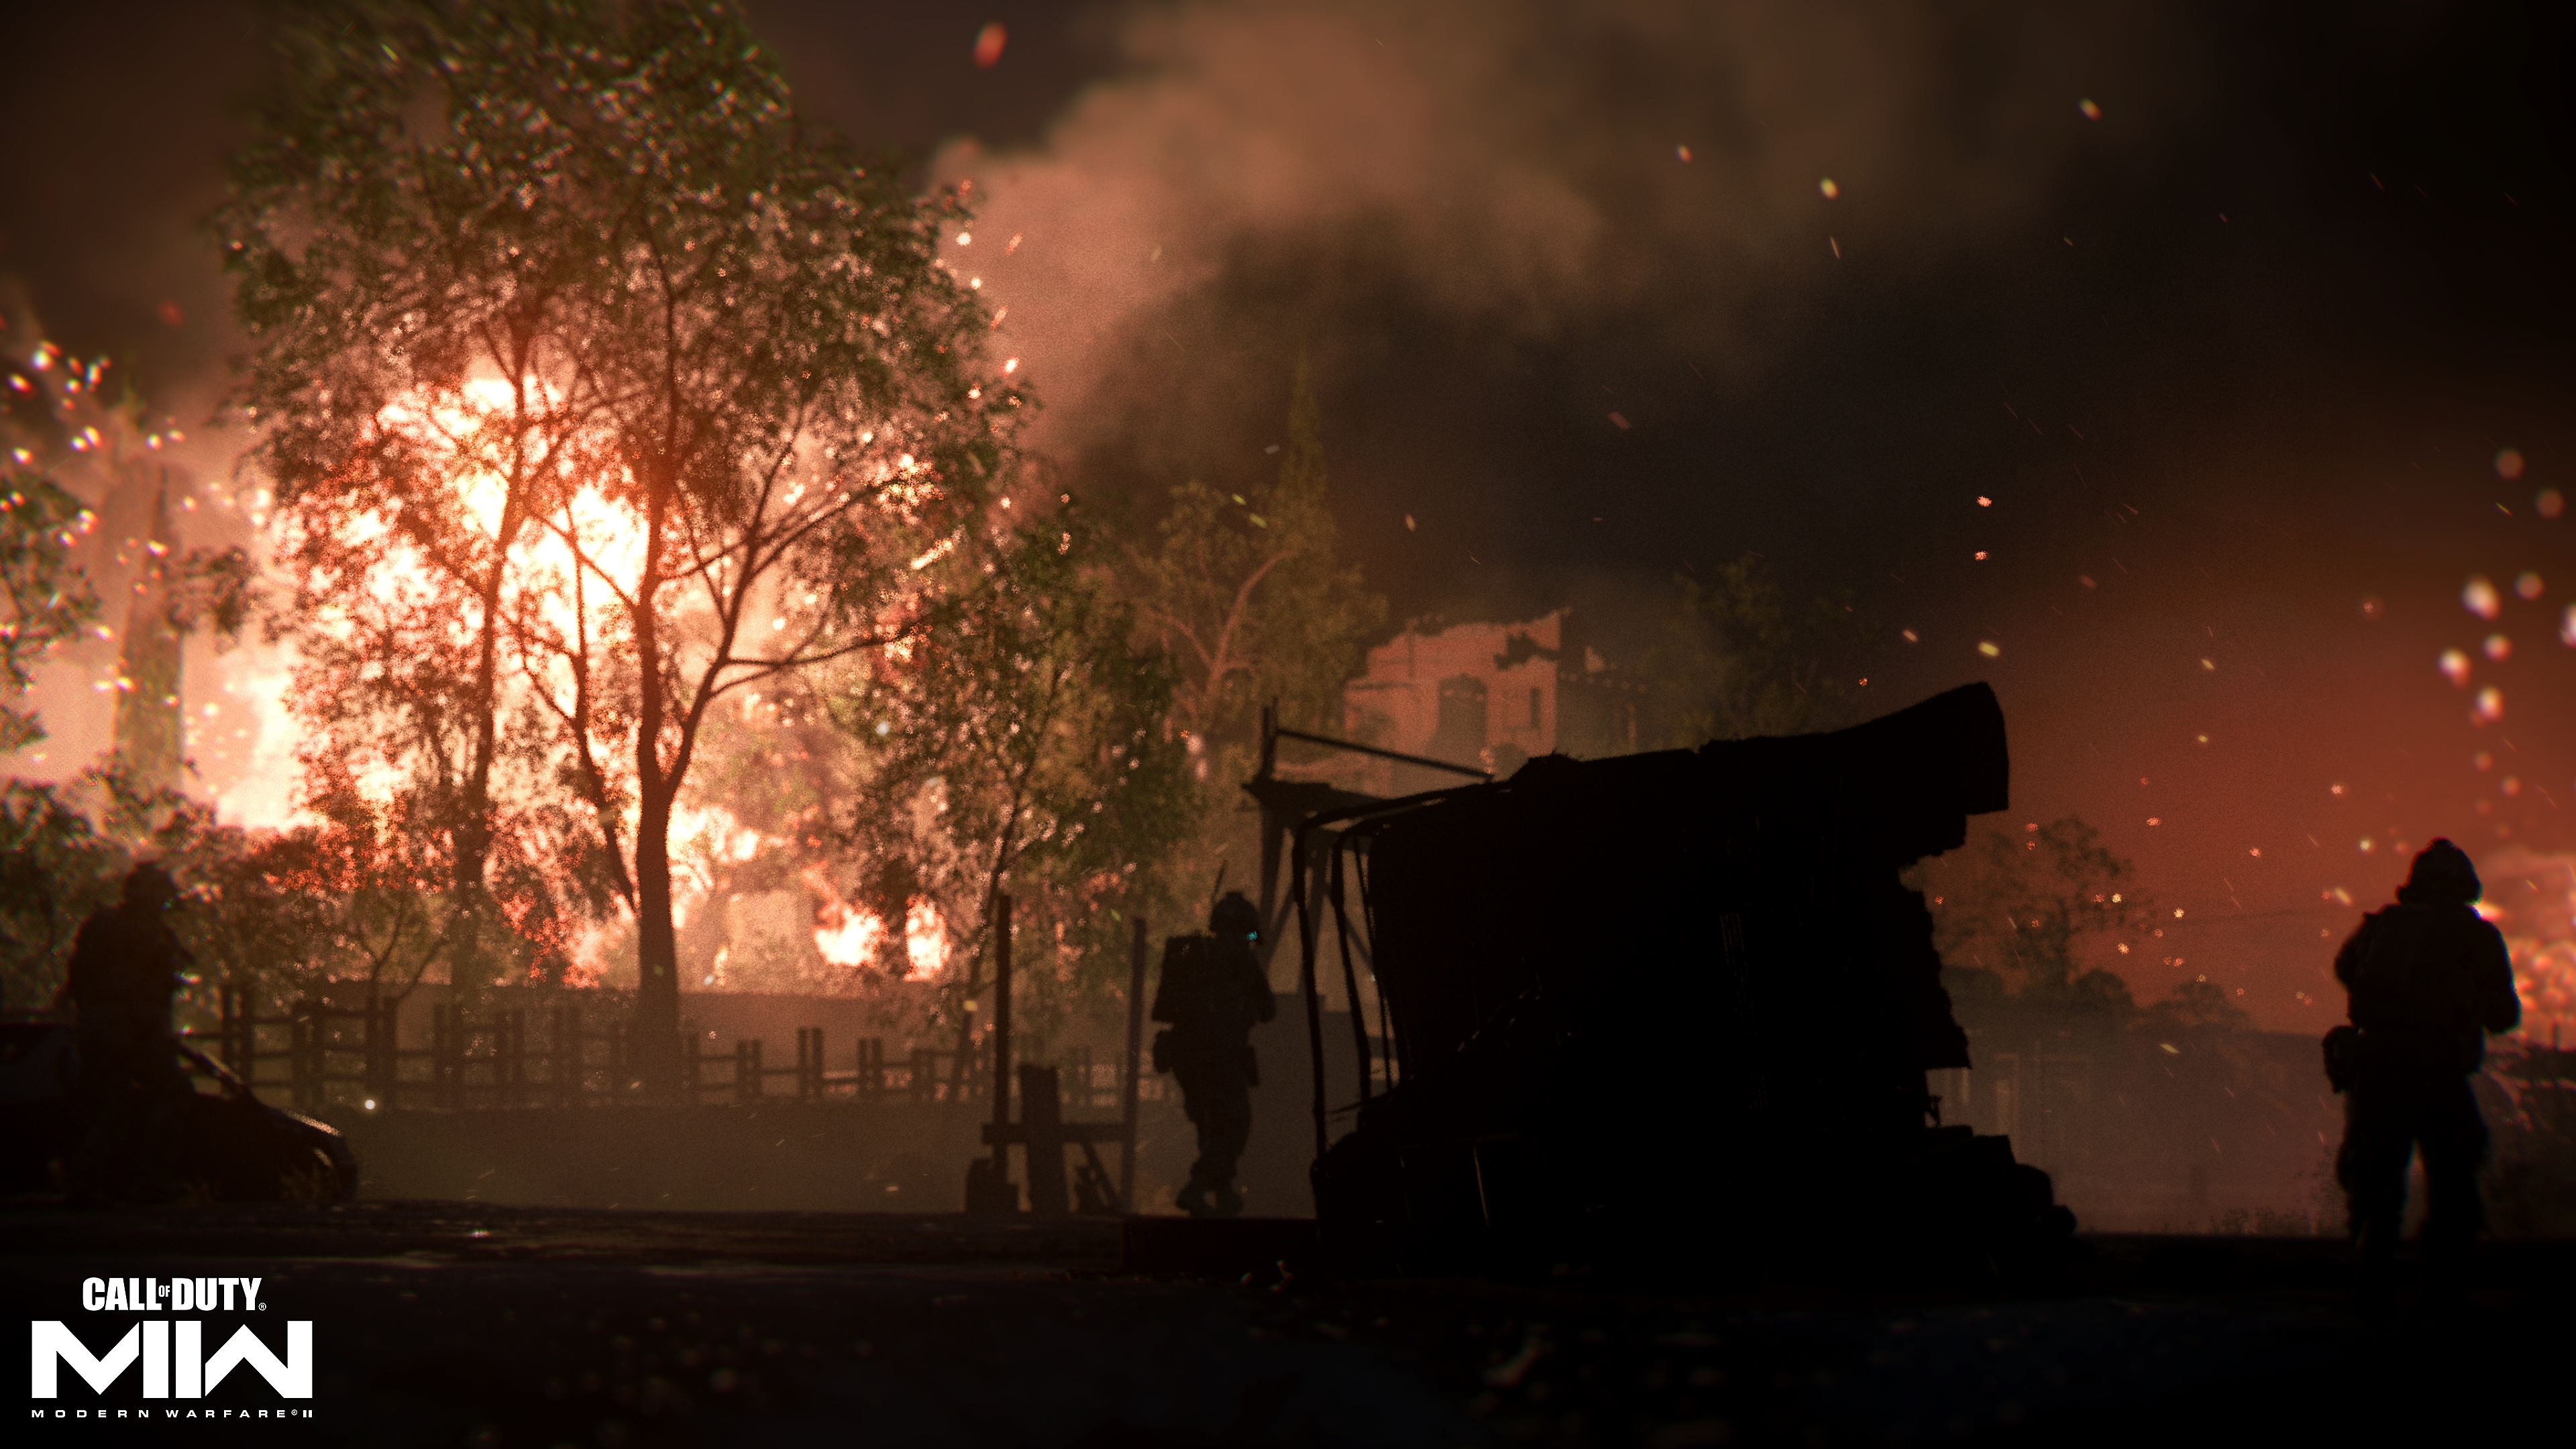 Call of Duty: Modern Warfare II (2022) - captura de tela mostrando um incêndio distante atrás de uma árvore